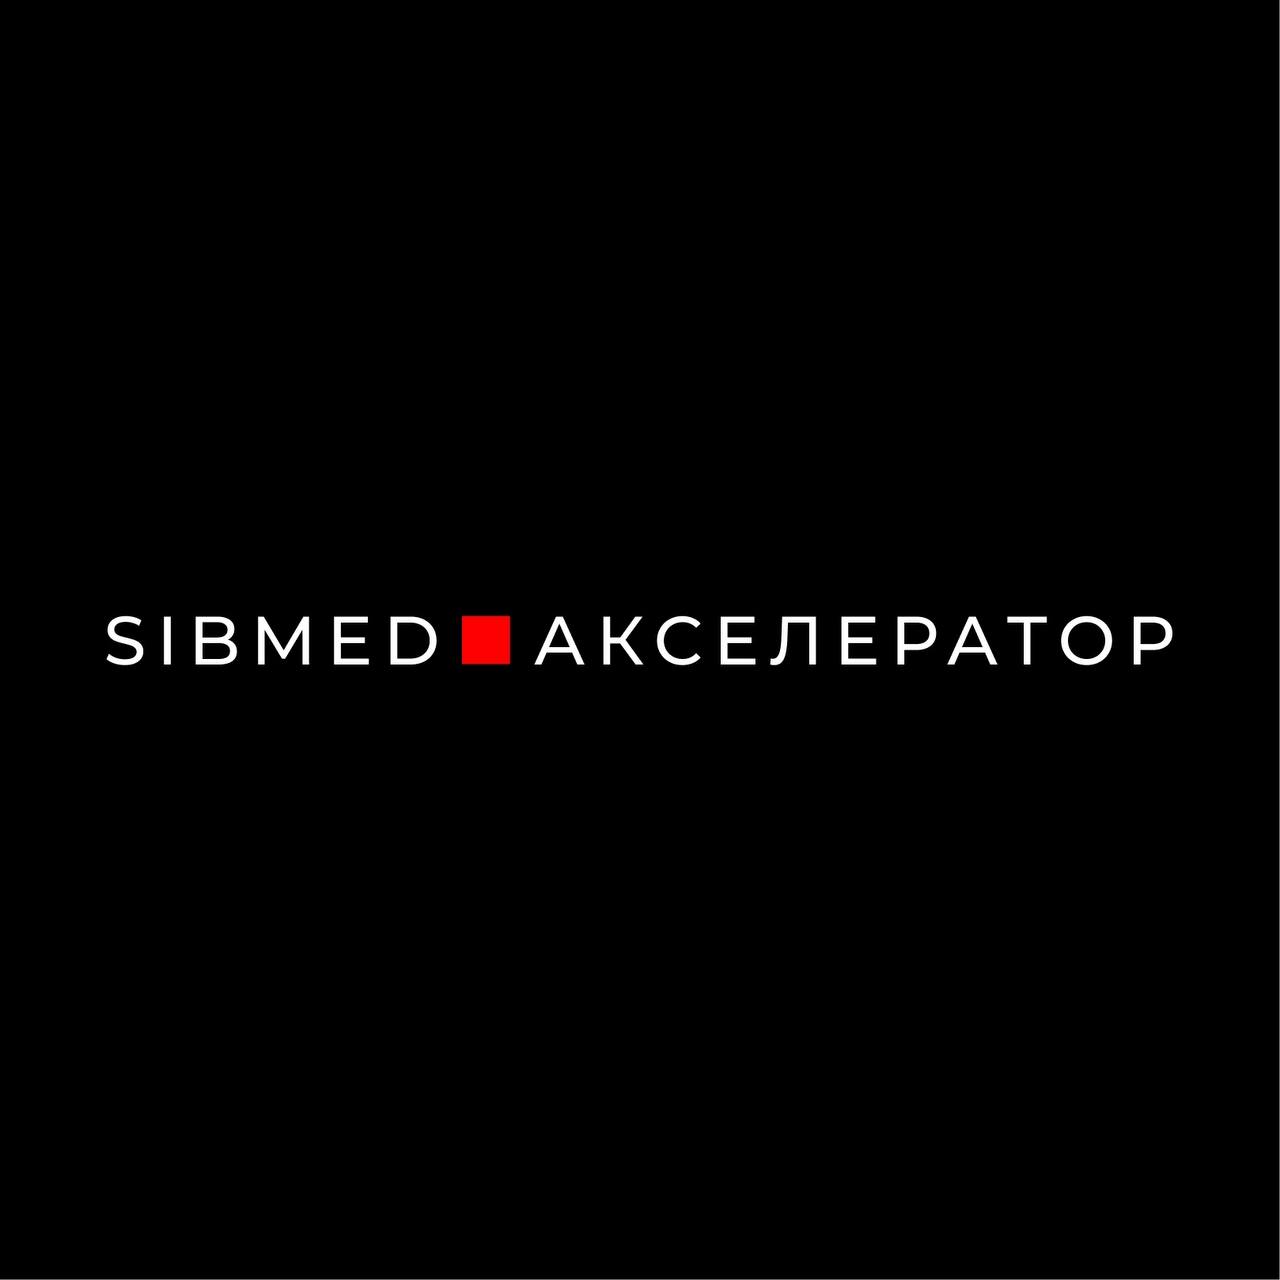 SIBMED-Акселератор